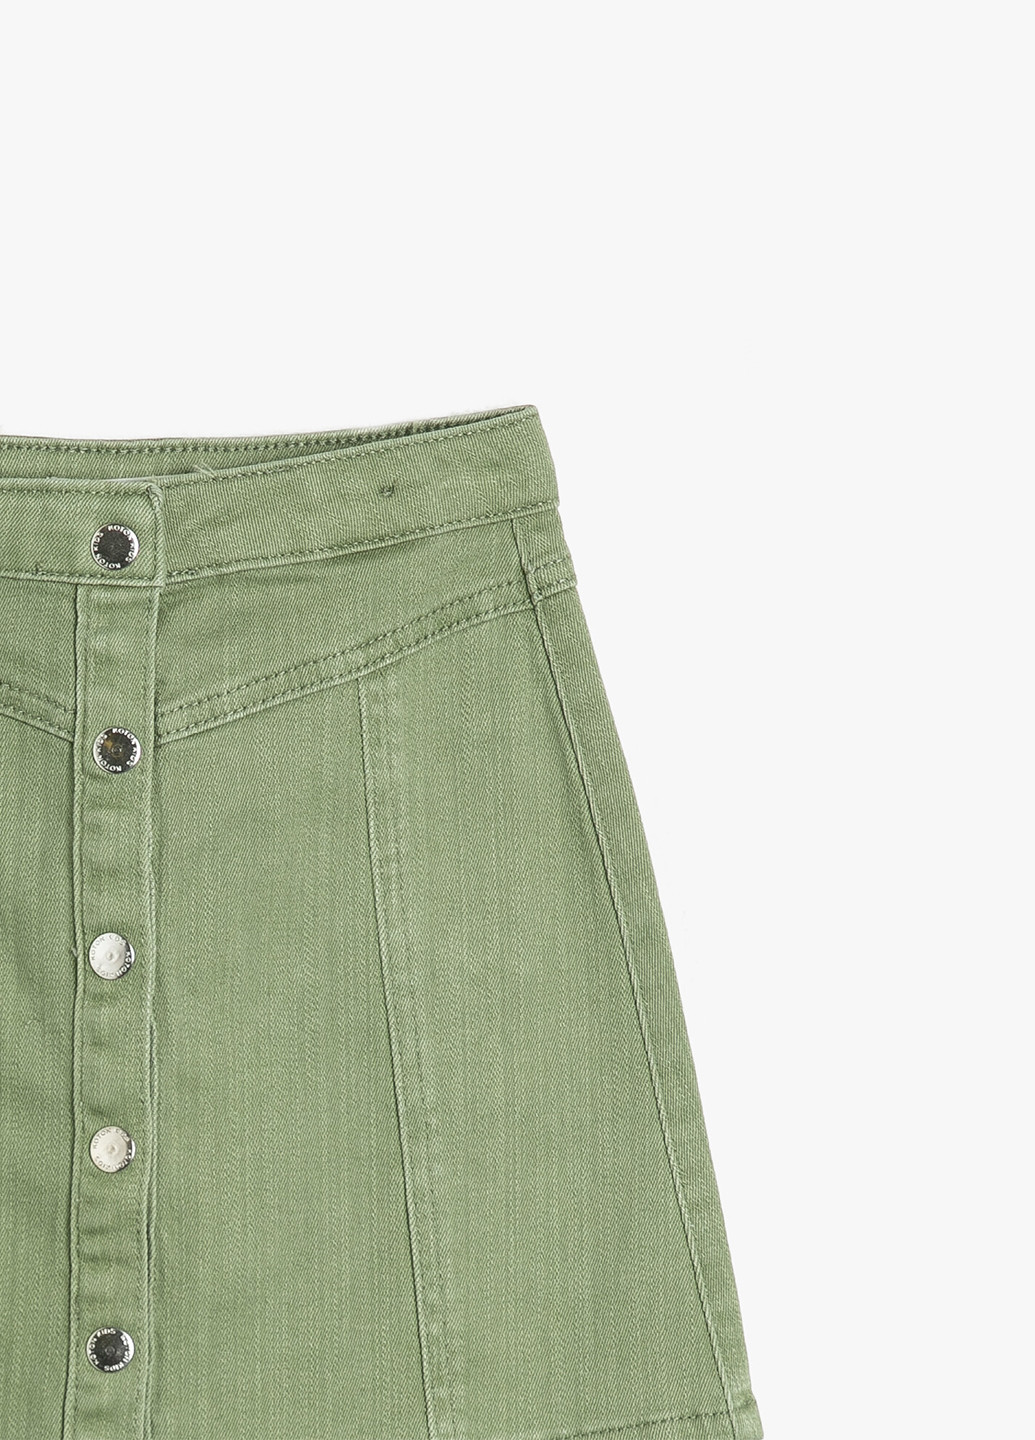 Светло-зеленая джинсовая однотонная юбка KOTON а-силуэта (трапеция)